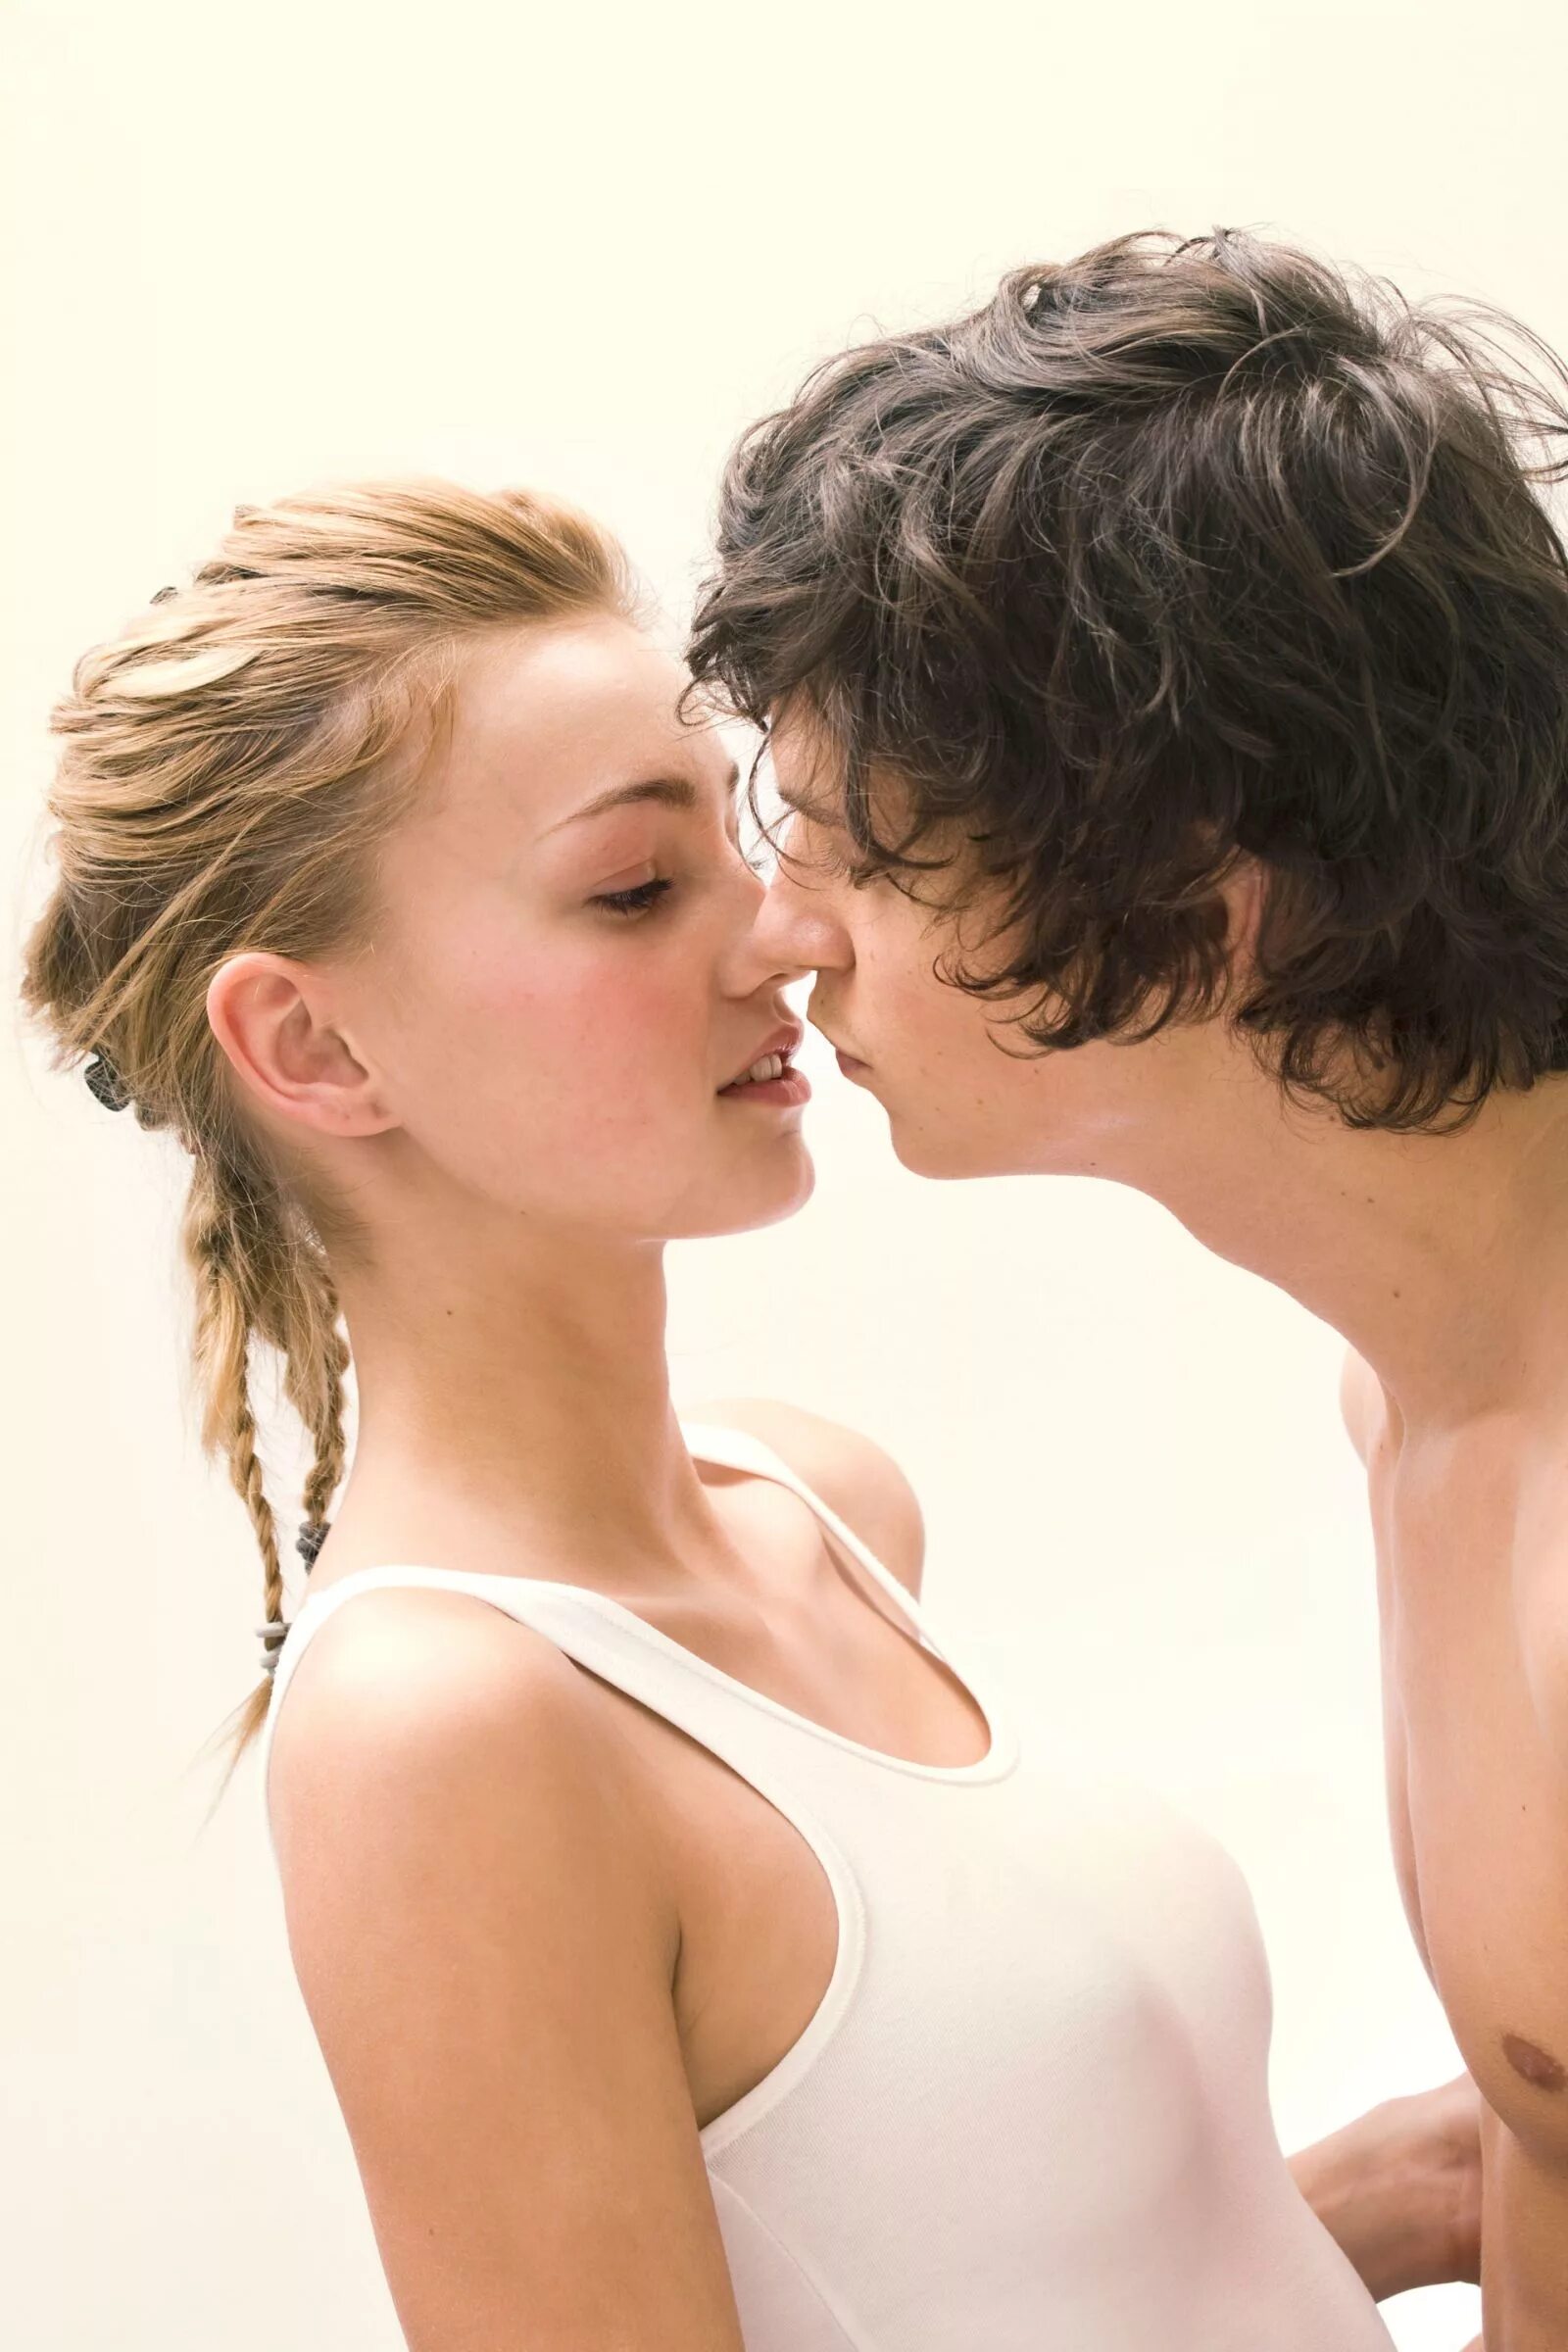 Pounding cute pomni. Kiss молодые. Первый поцелуй в 13. Поцелуй в 14 лет французский.